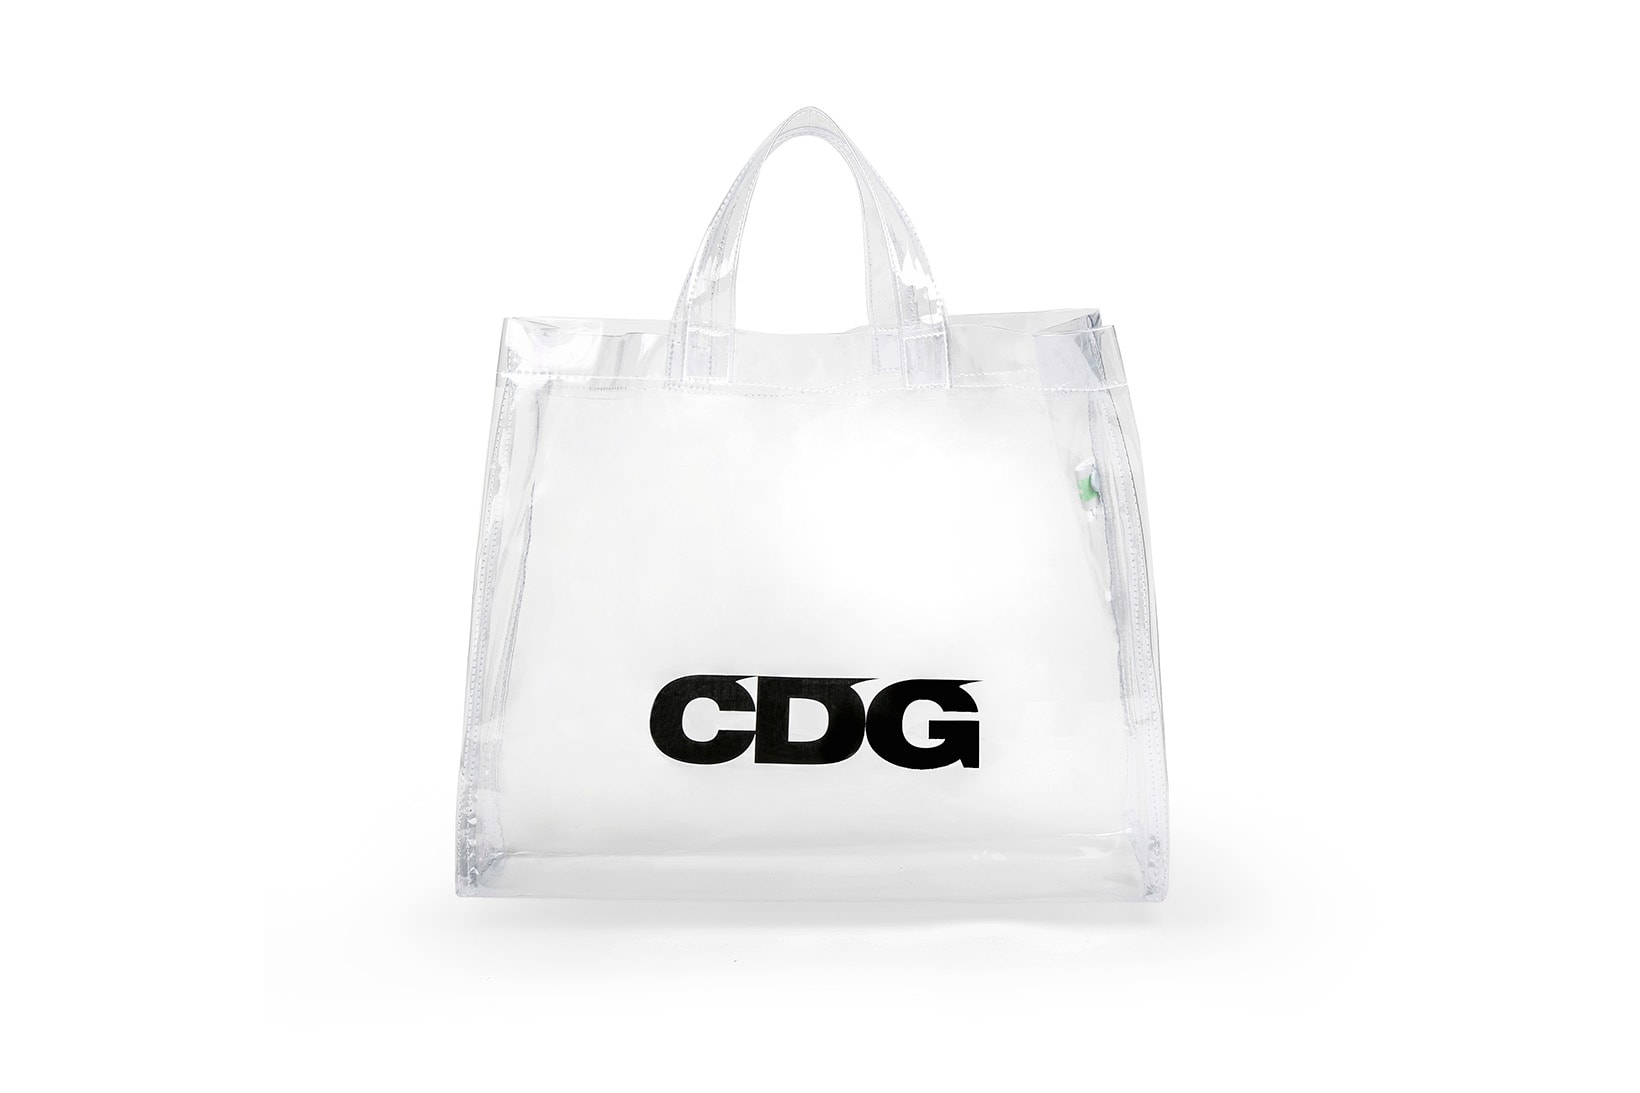 COMME des GARÇONS Logo Plastic Tote Bag 2018 Transparent See-Through PVC